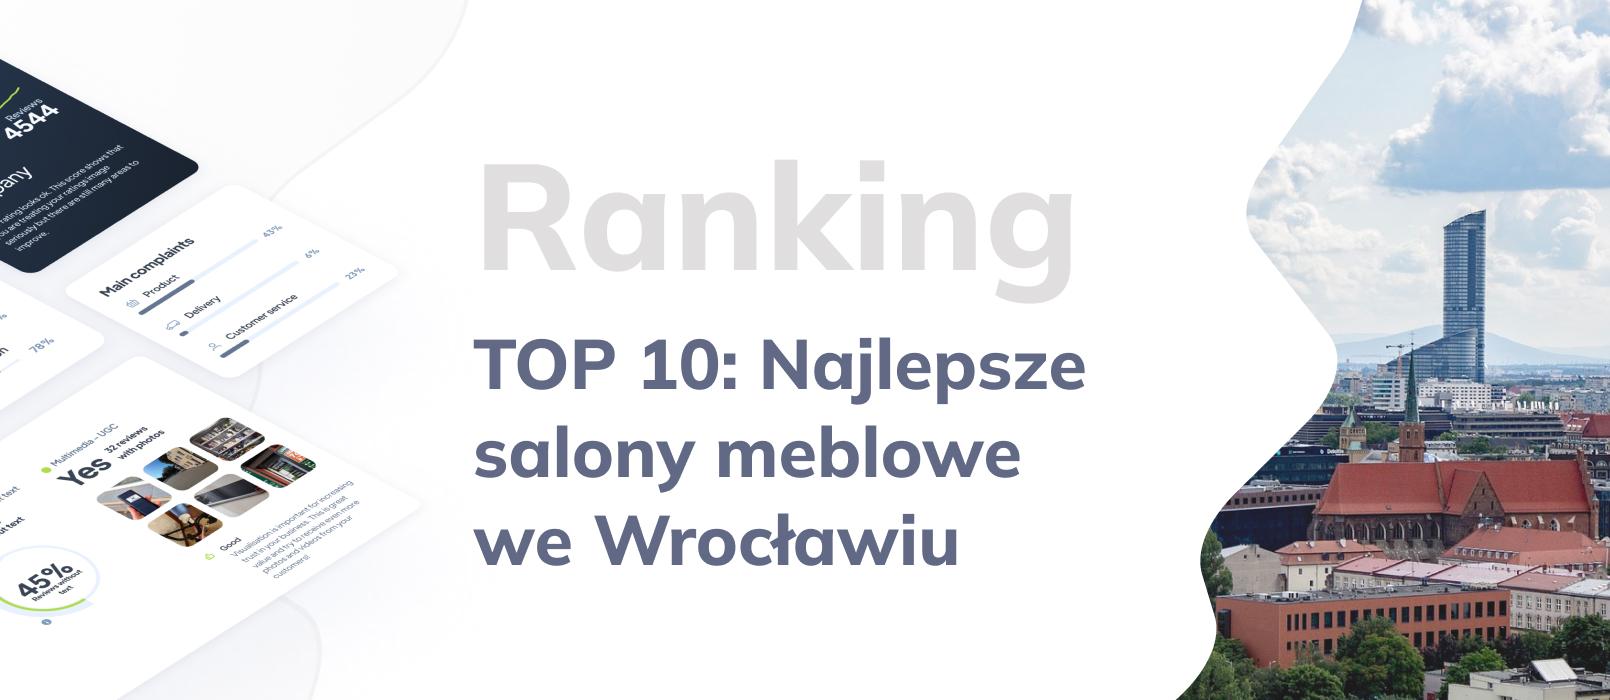 Najlepsze sklepy meblowe we Wrocławiu – TOP 10: Ranking salonów meblowych